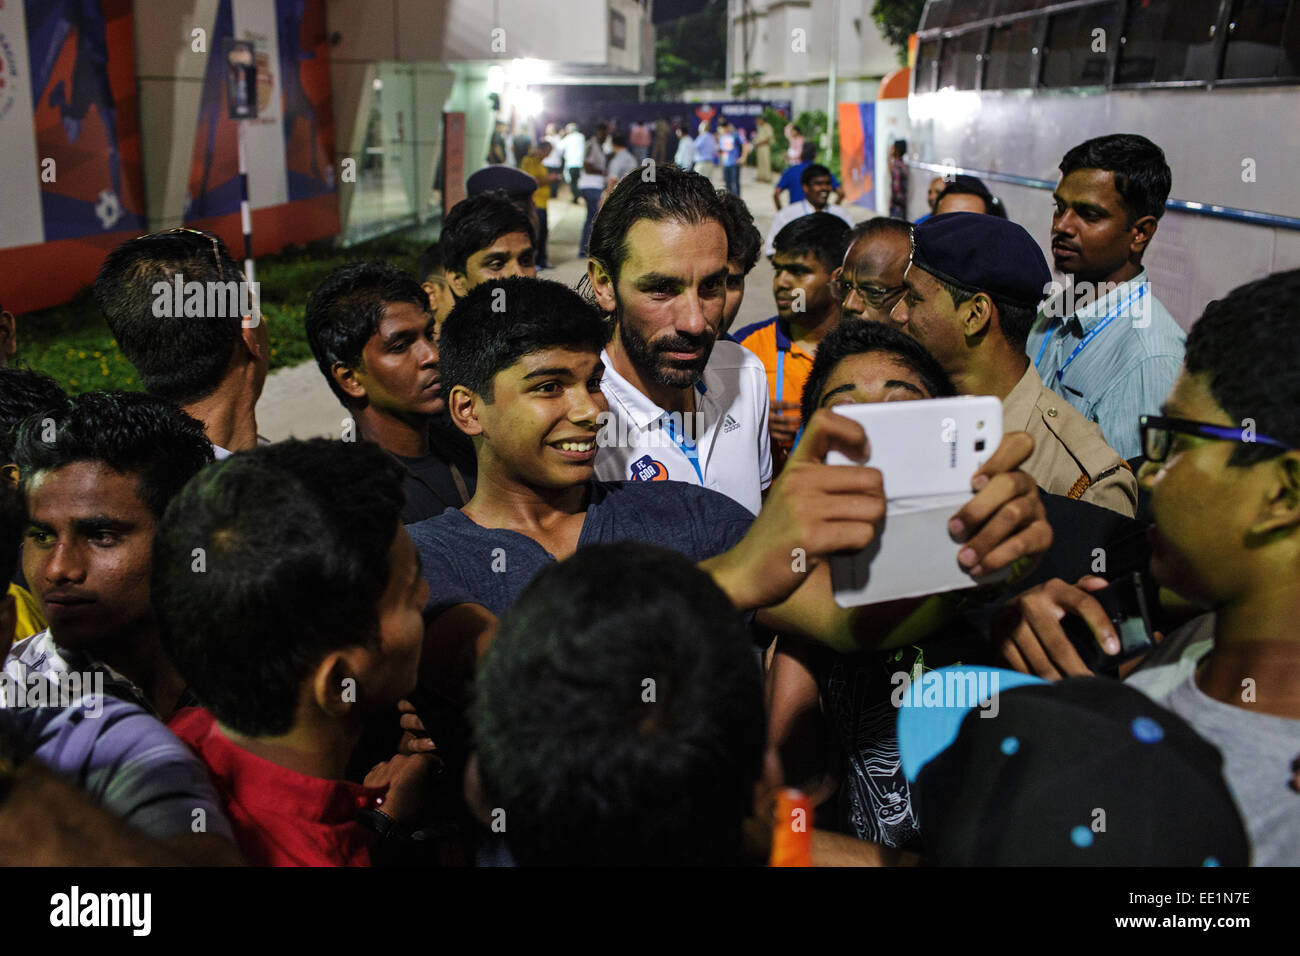 Robert PIRES poses para fotografías con los jóvenes de la India los aficionados después de un partido de fútbol de la Liga Super indio en Margao, Goa. Foto de stock